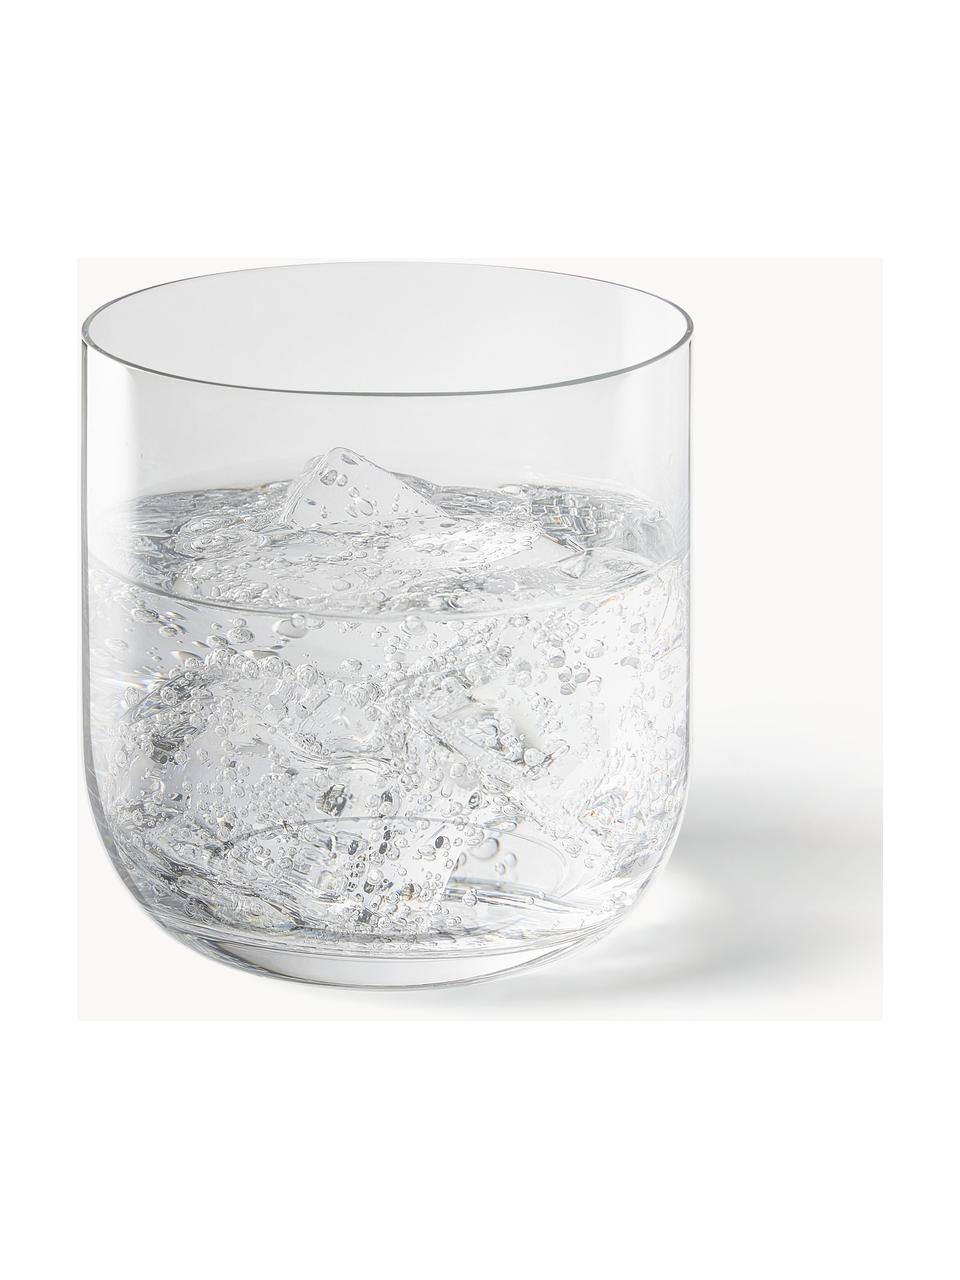 Wassergläser Eleia, 4 Stück, Kristallglas

Bring den Glanz von Kristallglas auf Deinen Esstisch! Das Glas ist aussergewöhnlich transparent und schwer, dadurch fühlt es sich wertig an und sieht gleichzeitig auch noch gut aus. Zudem machen die filigranen Schliffe jedes Stück zu einem besonderen It-Piece, das sowohl praktisch als auch schön ist., Transparent, Ø 7 x H 9 cm, 330 mll